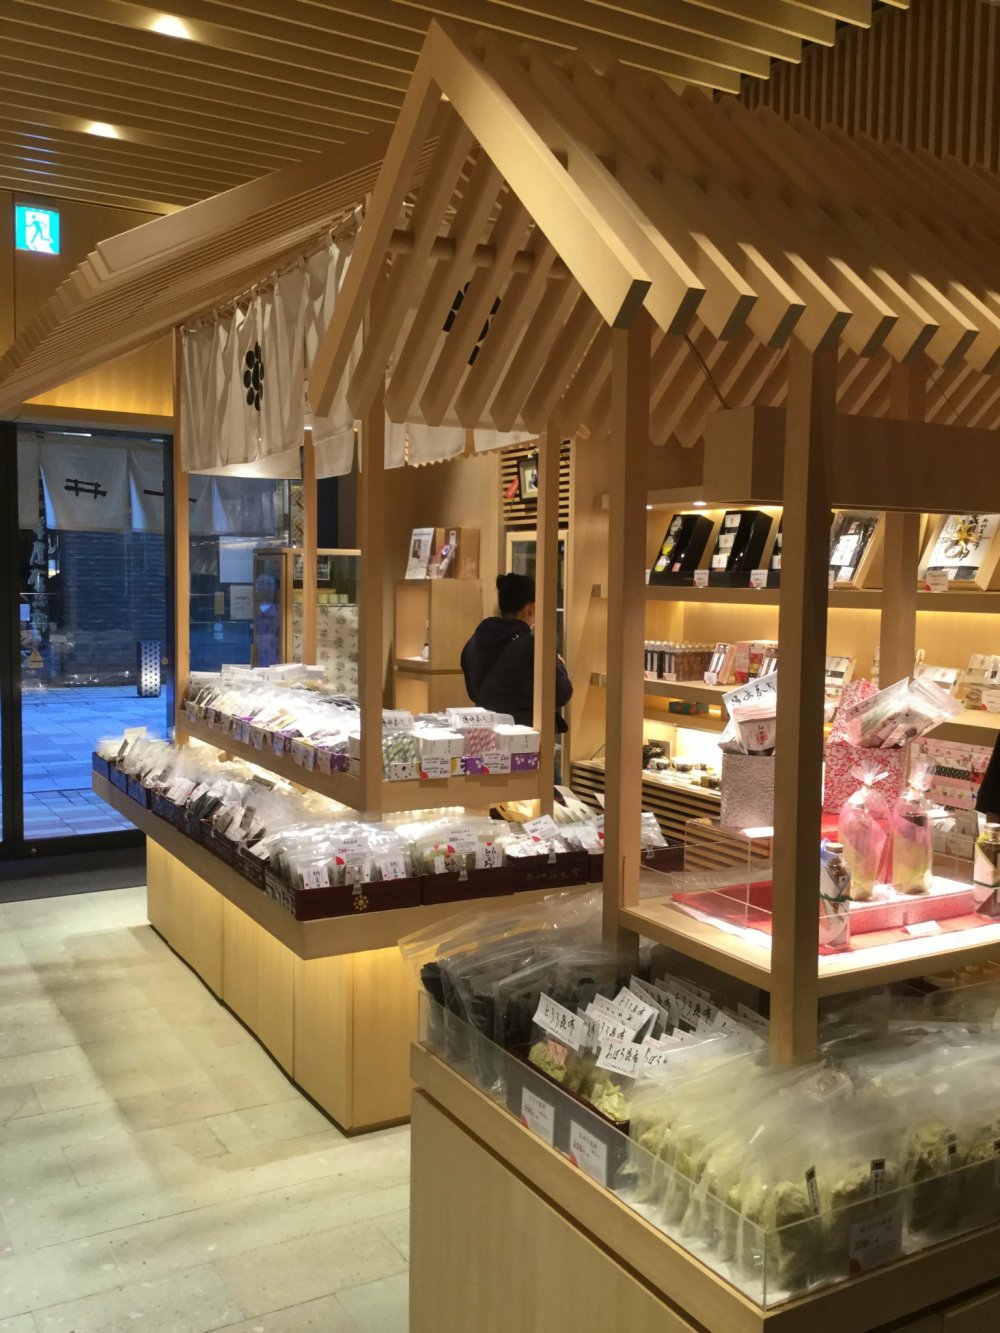 Lantai toko terbuat dari Shakudani, sejenis batu vulkanik yang ditemukan di Prefektur Fukui dan secara signifikan sangat penting untuk toko ini mengingat dulu mereka menukar batu ini dengan kombu di Hokkaido